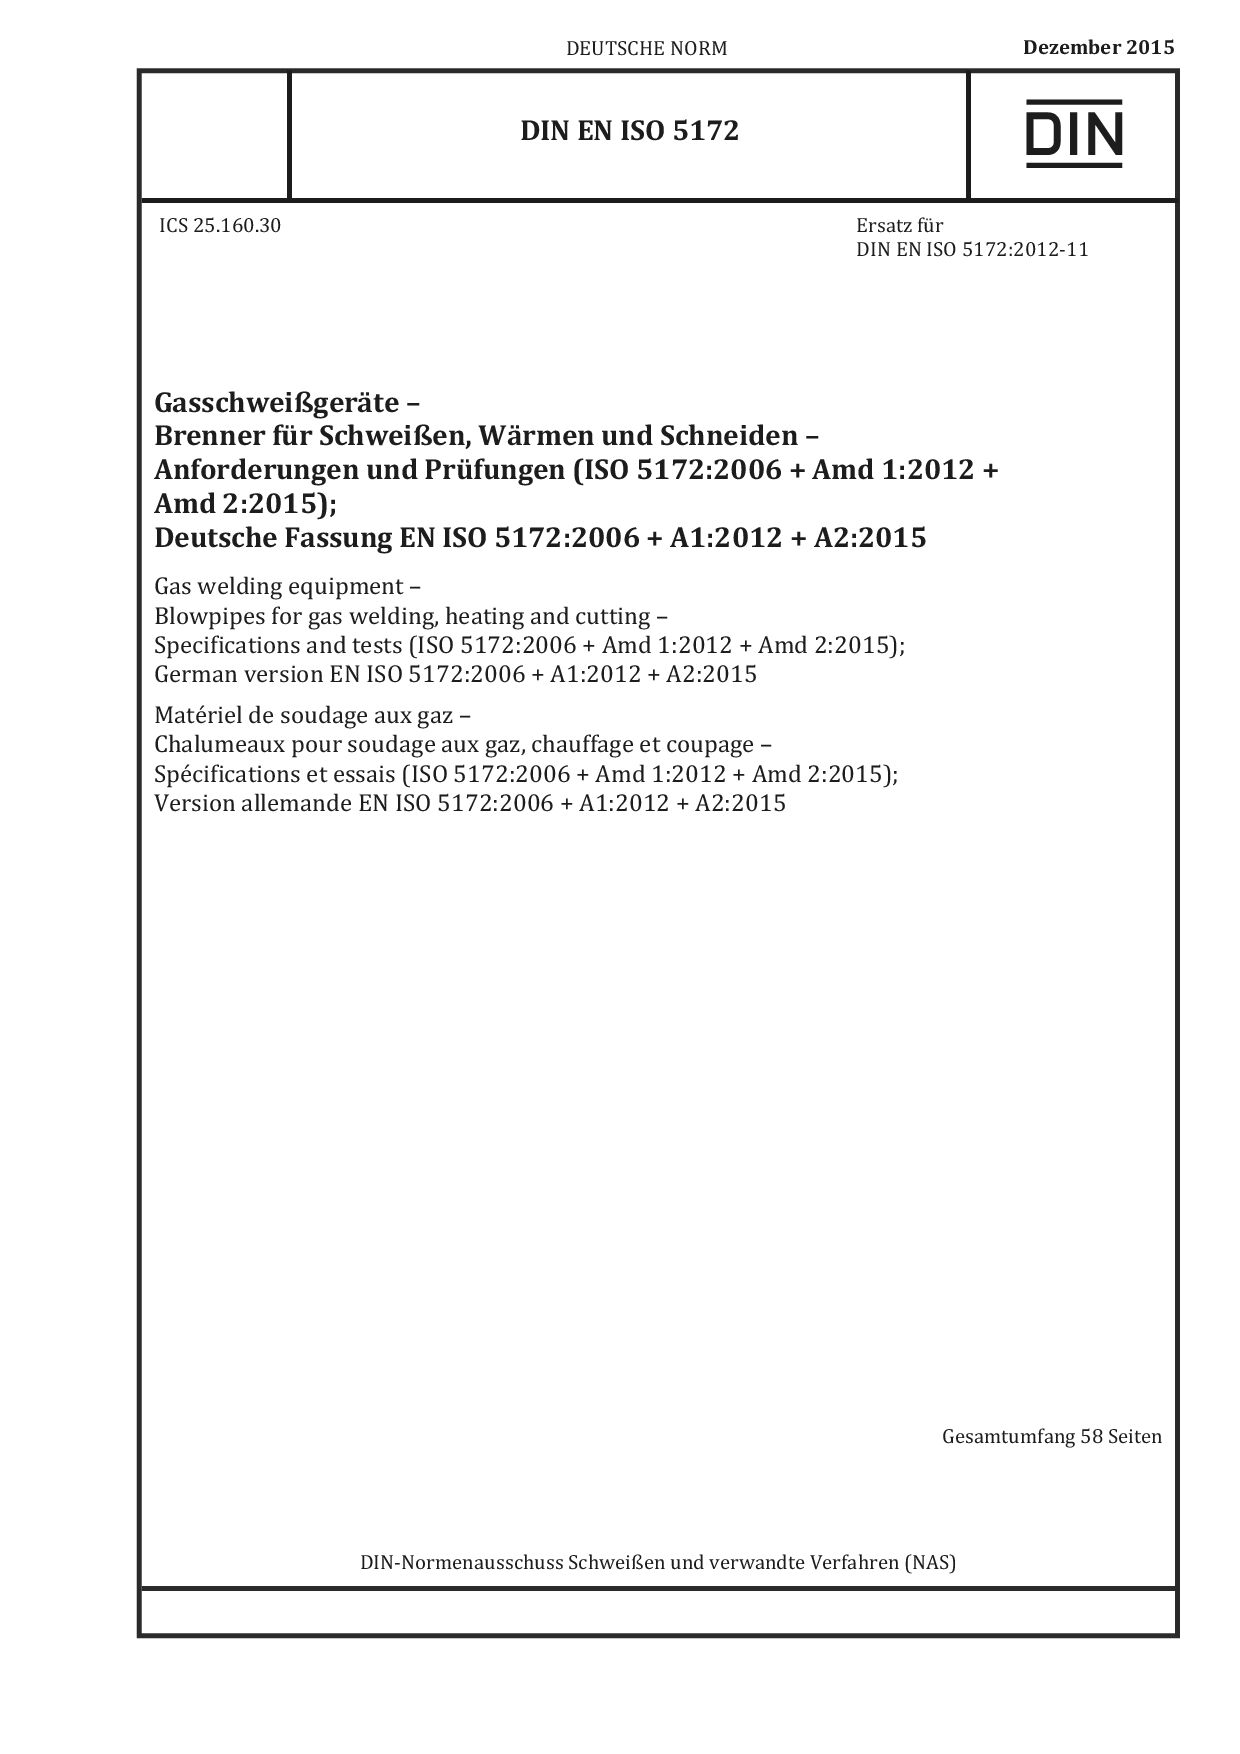 DIN EN ISO 5172:2015封面图